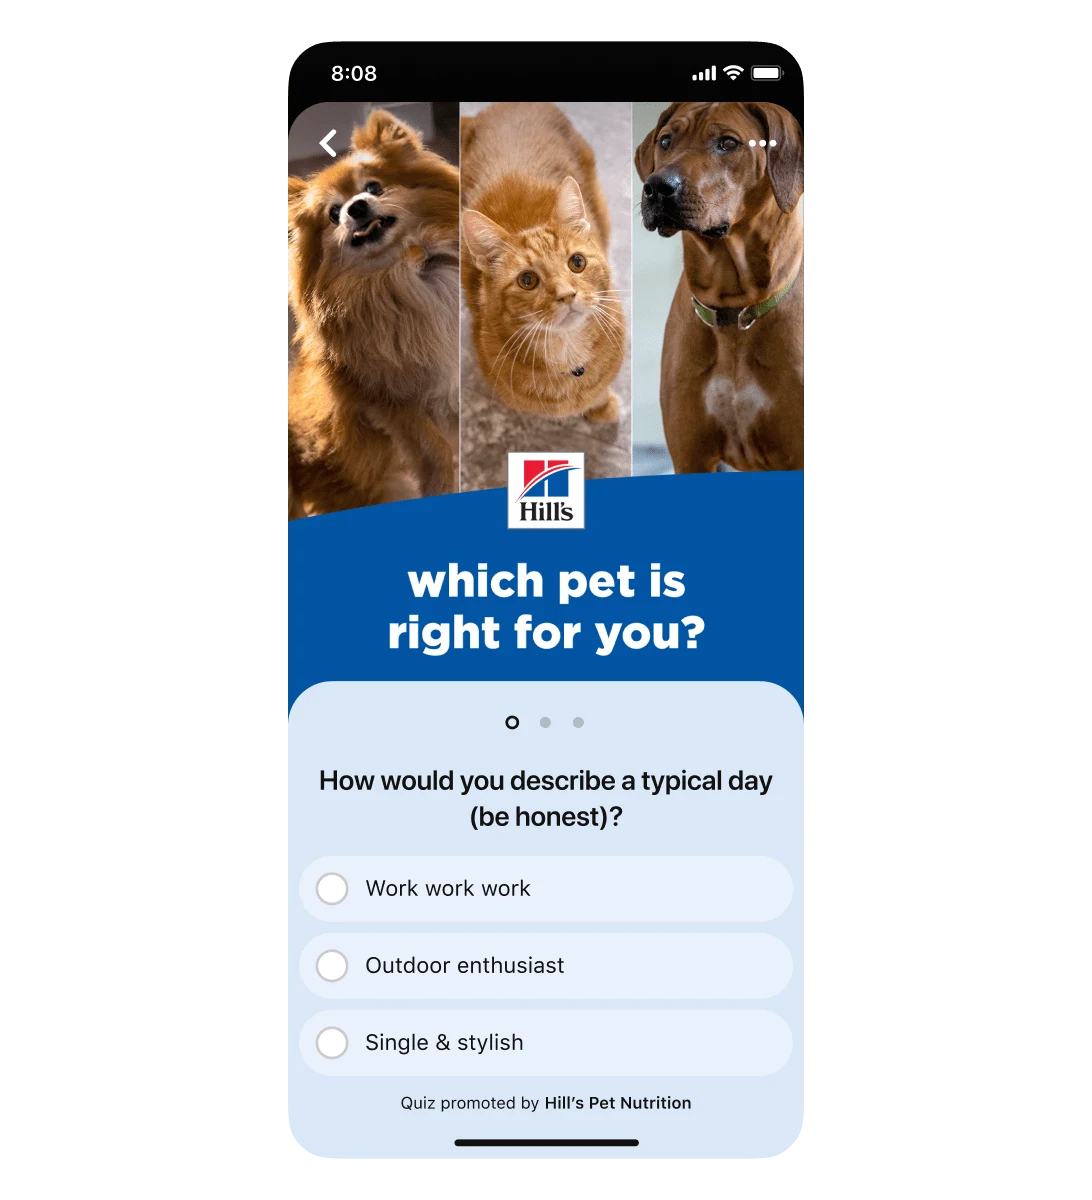 Hill's Pet Nutrition의 Pinterest 퀴즈 광고를 표시한 모바일 화면 뷰입니다. 첫 번째 퀴즈 질문은 "평범한 하루를 어떻게 보내시나요?(솔직히)"입니다. 세 가지 답변 선택지로는 "워커홀릭", "아웃도어 마니아", "스타일리시 싱글 라이프"가 있습니다.